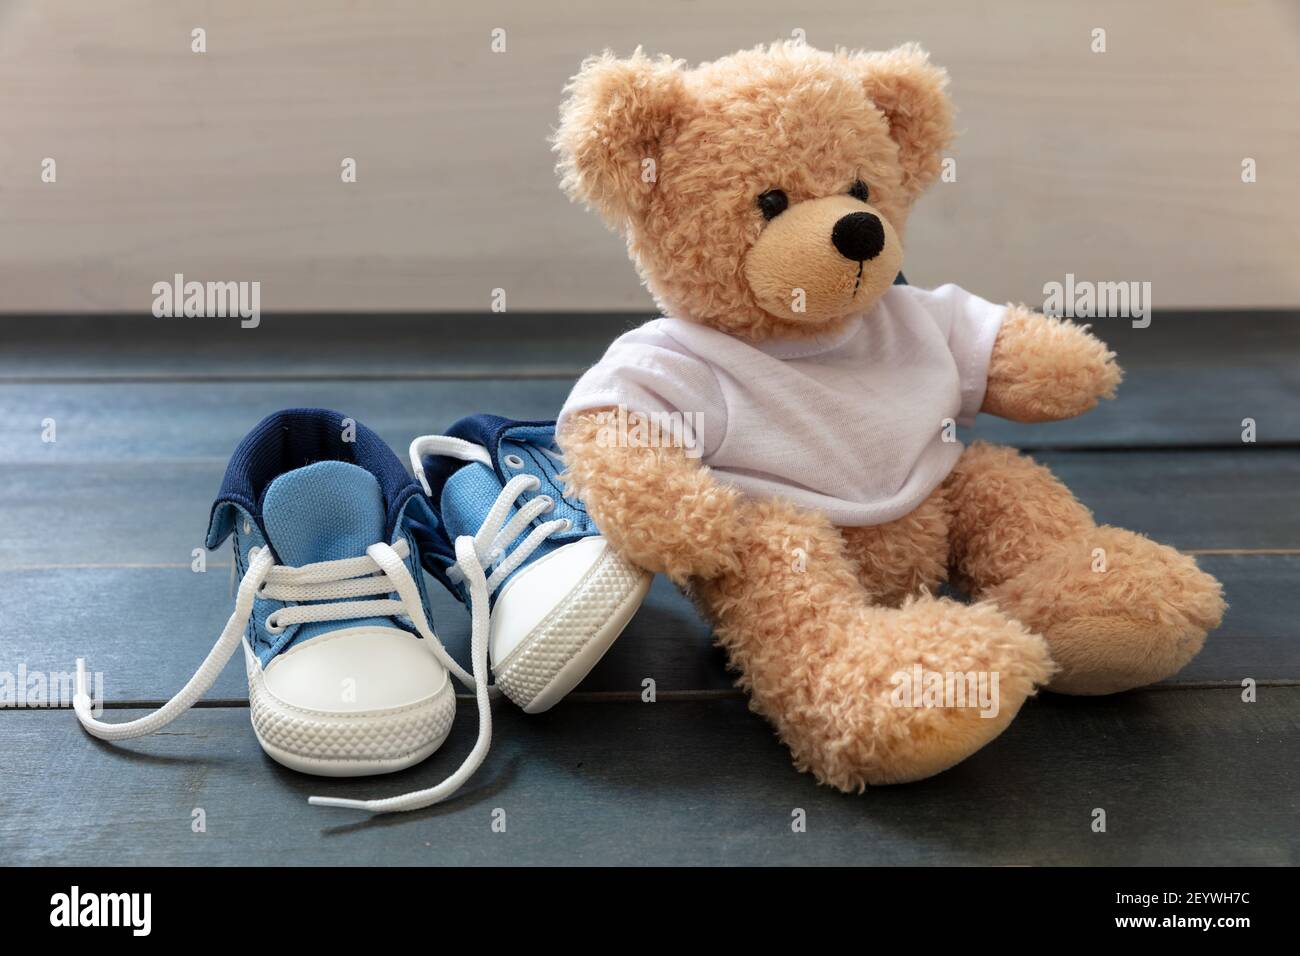 Chaussures de sport pour bébé et un adorable ours en peluche sur parquet  bleu. Baskets de petite taille pour enfant, chaussons en toile bleu et  blanc avec lacets pour chaussures dénoués Photo